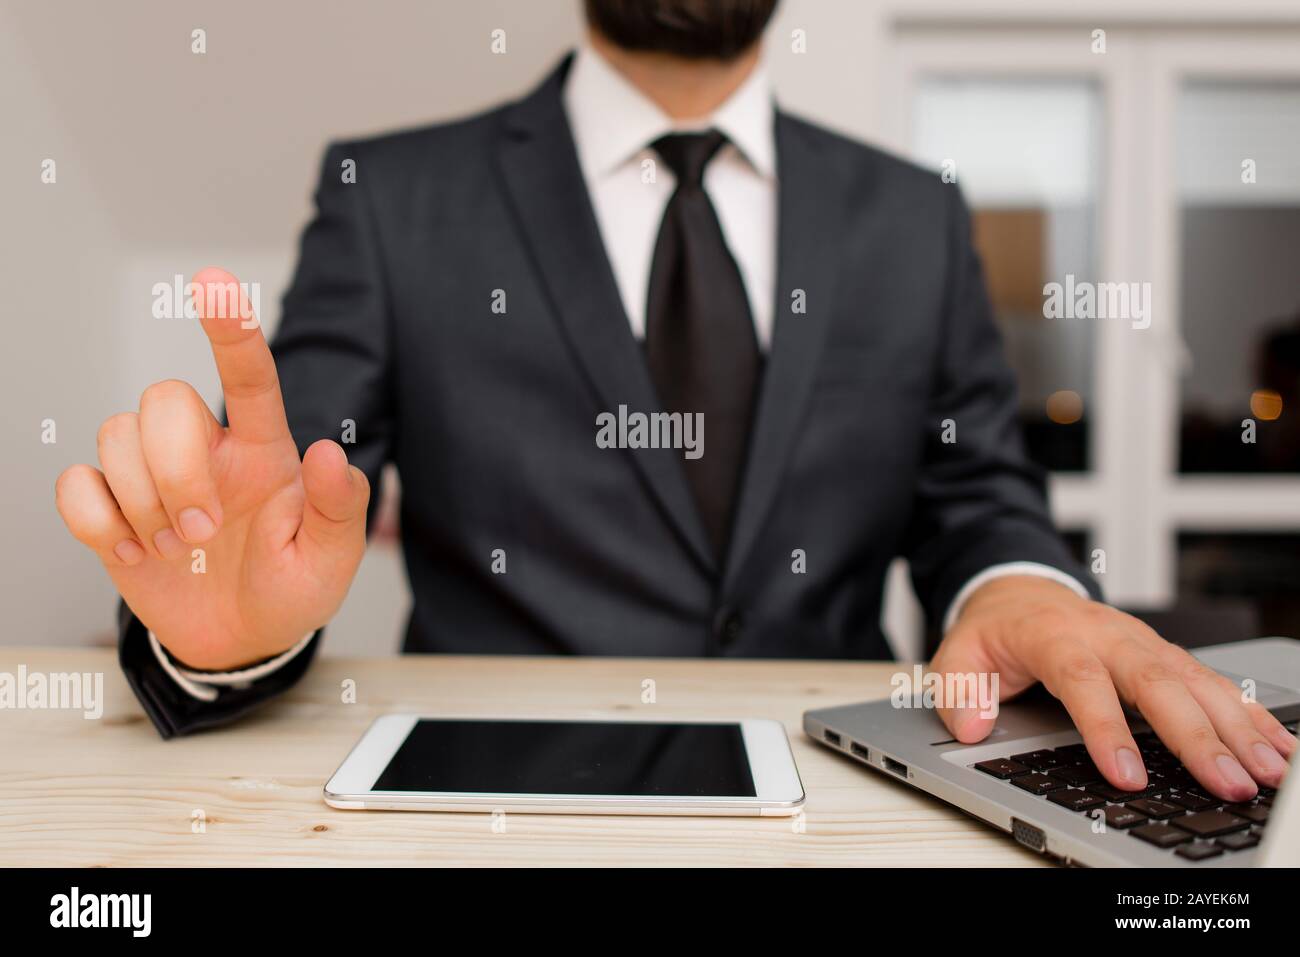 Homme vêtements de travail habillés vêtements de travail formels présentant la présentation d'un smartphone de haute technologie. Homme vêtu d'un costume de travail pl Banque D'Images